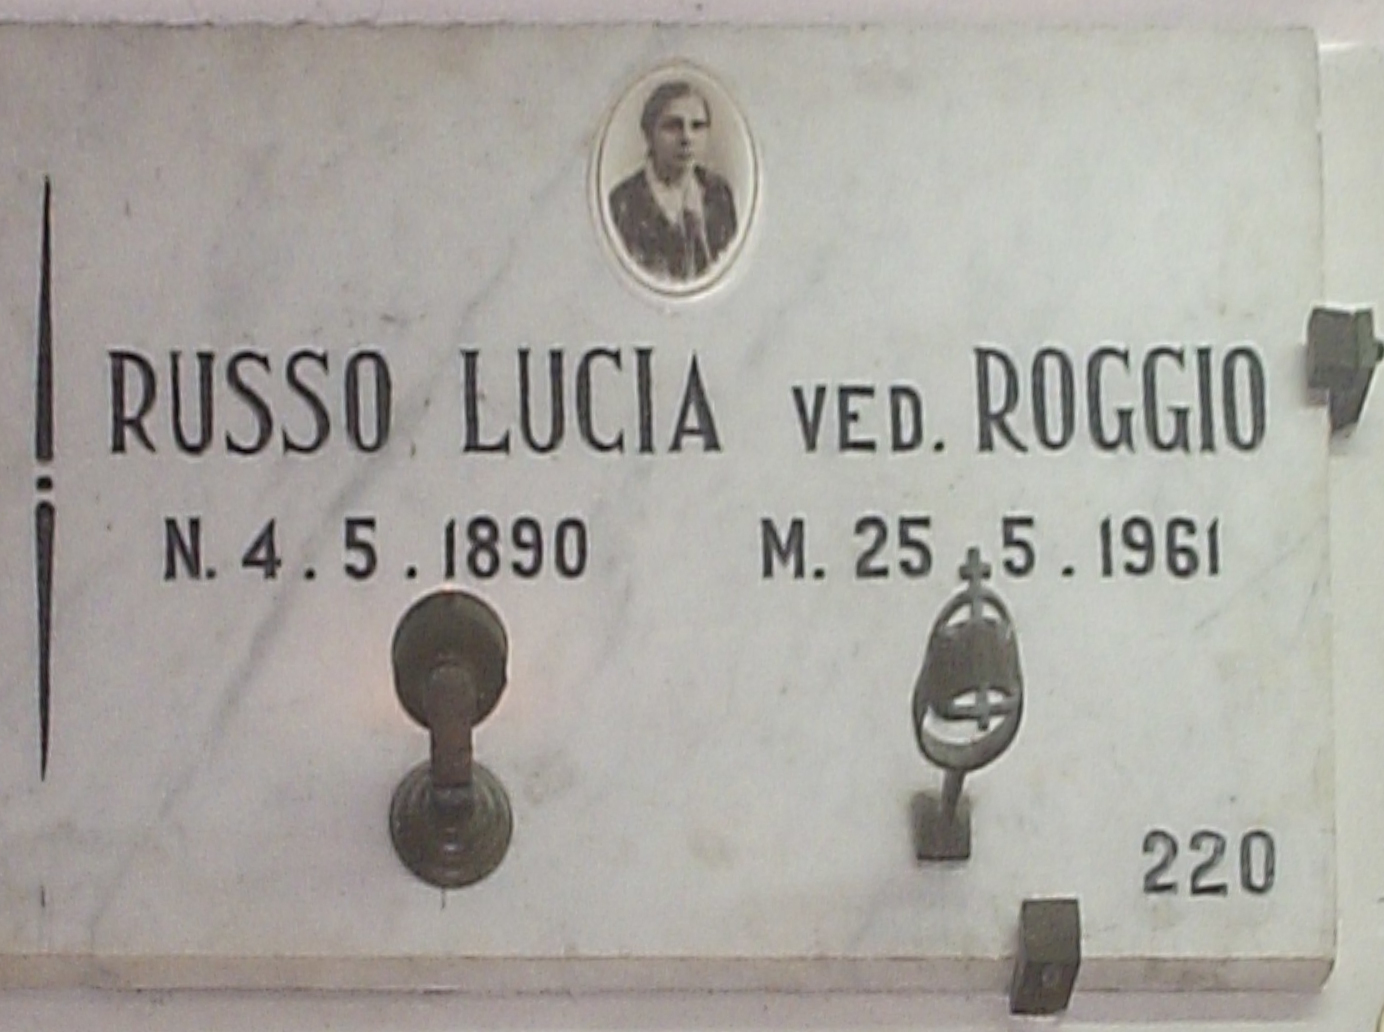 Russo Lucia vedova Roggio